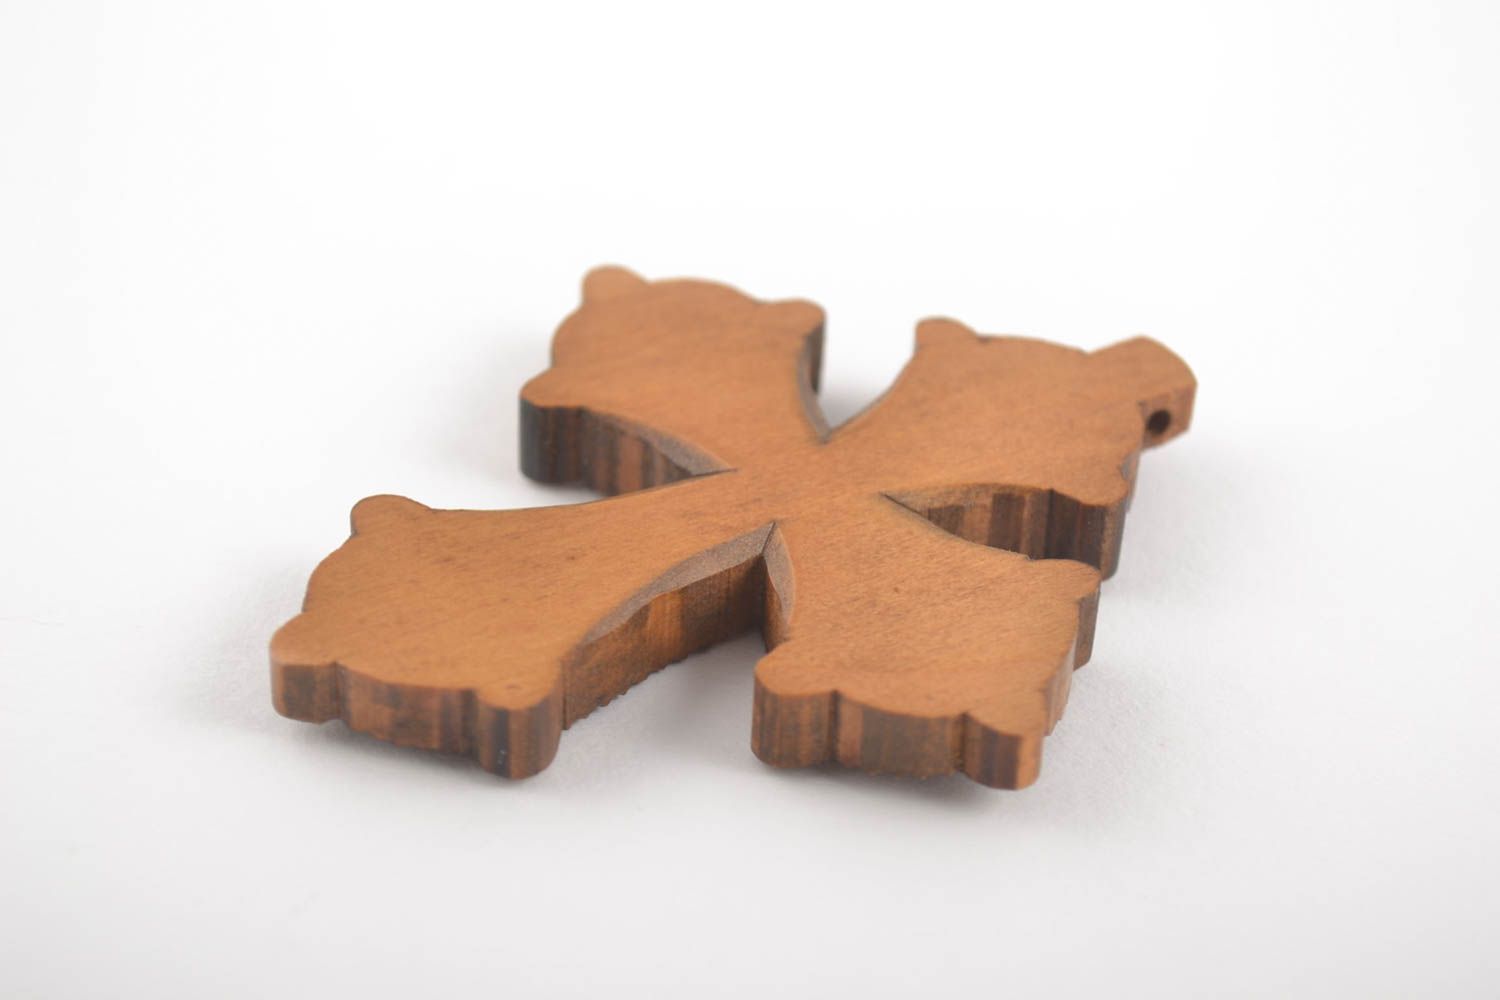 Крест ручной работы нательный крестик из груши оригинальный крестик со скорлупой фото 4